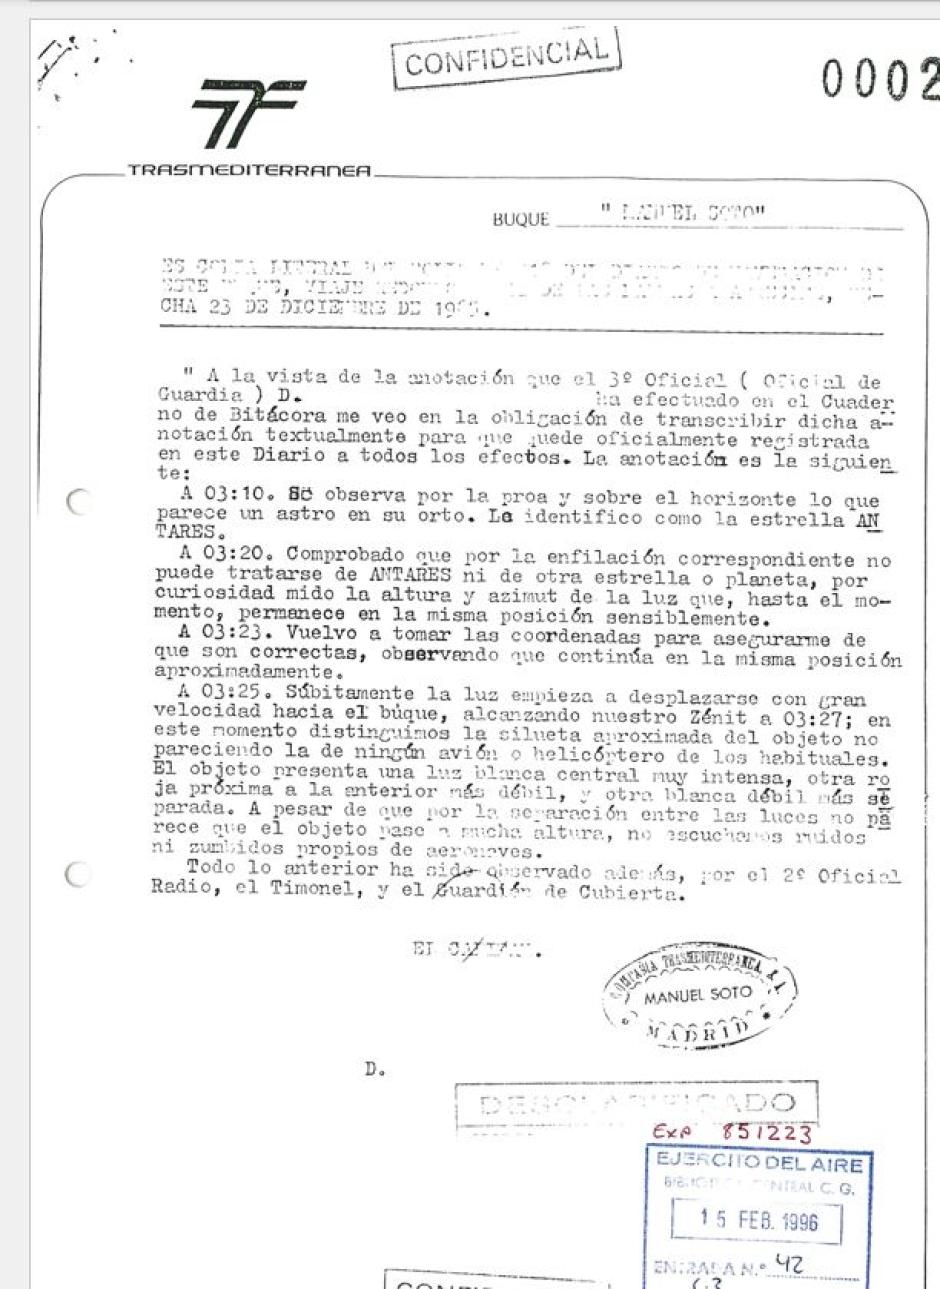 Copia literal del diario de navegación del buque Manuel Soto de la compañía Trasmediterránea, el 23 de diciembre de 1985